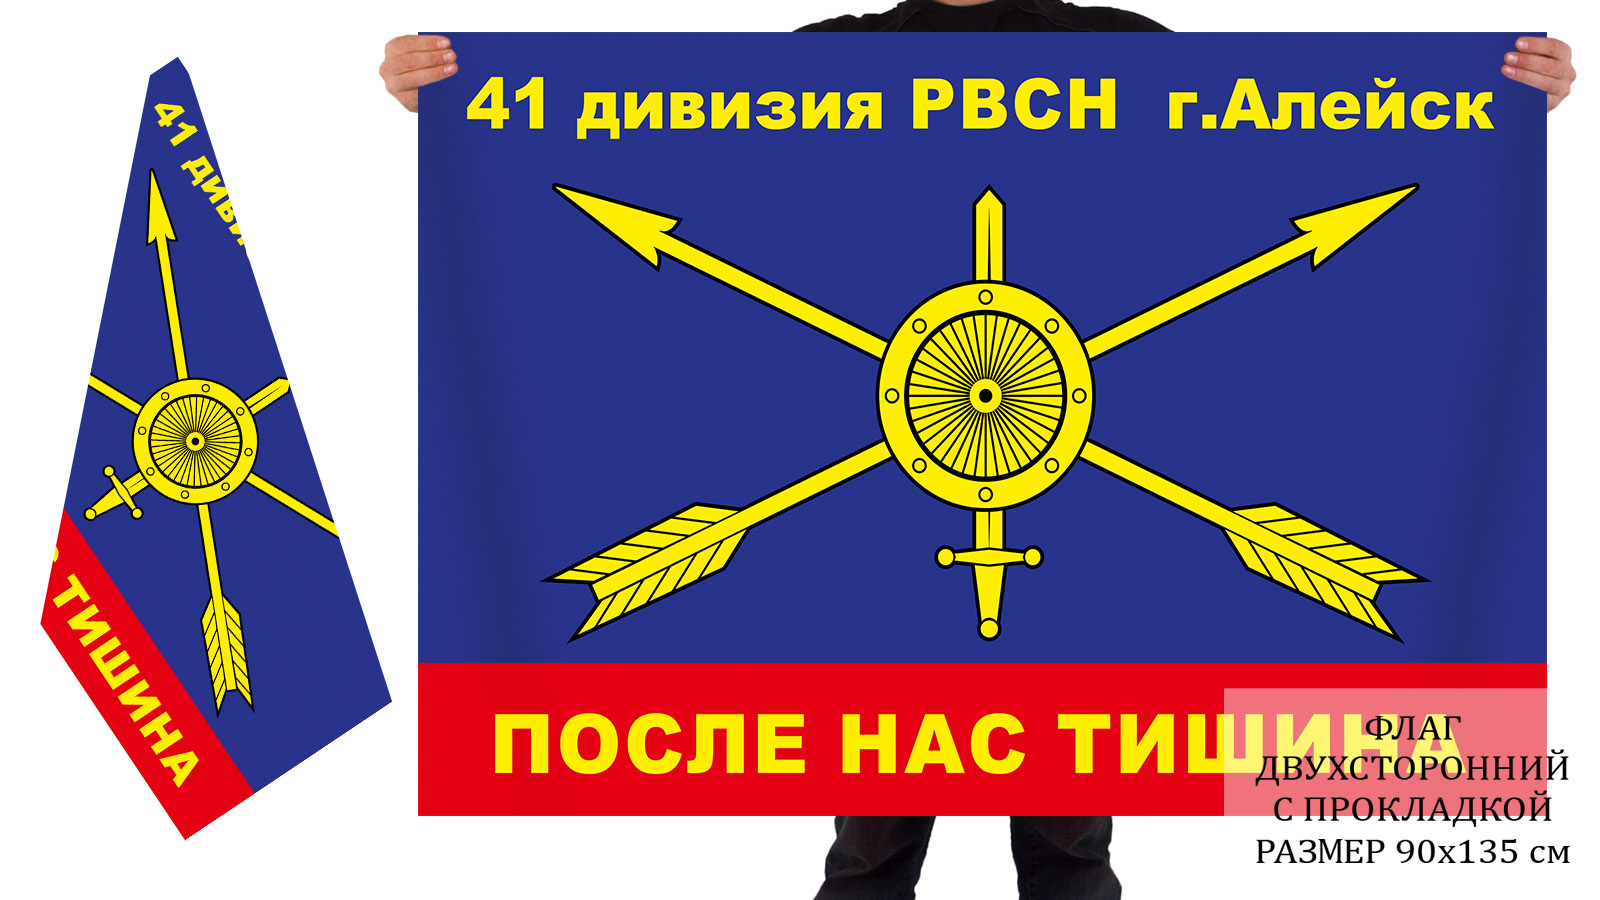 Ракетные войска стратегического назначения РВСН флаг